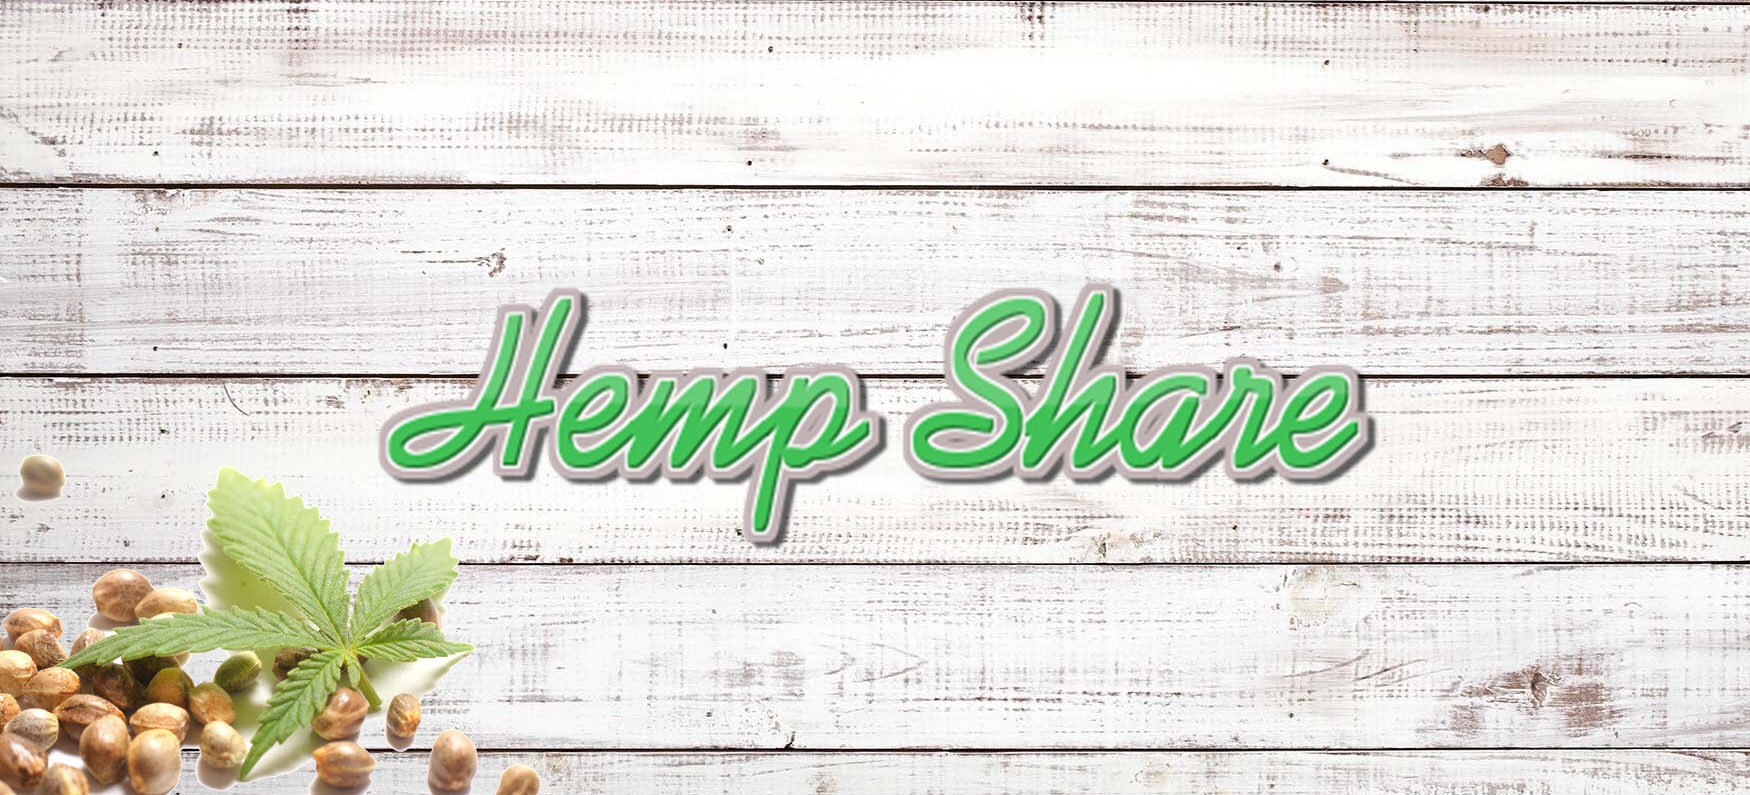 Hemp, CBD Medical Marijuana - Information for all.